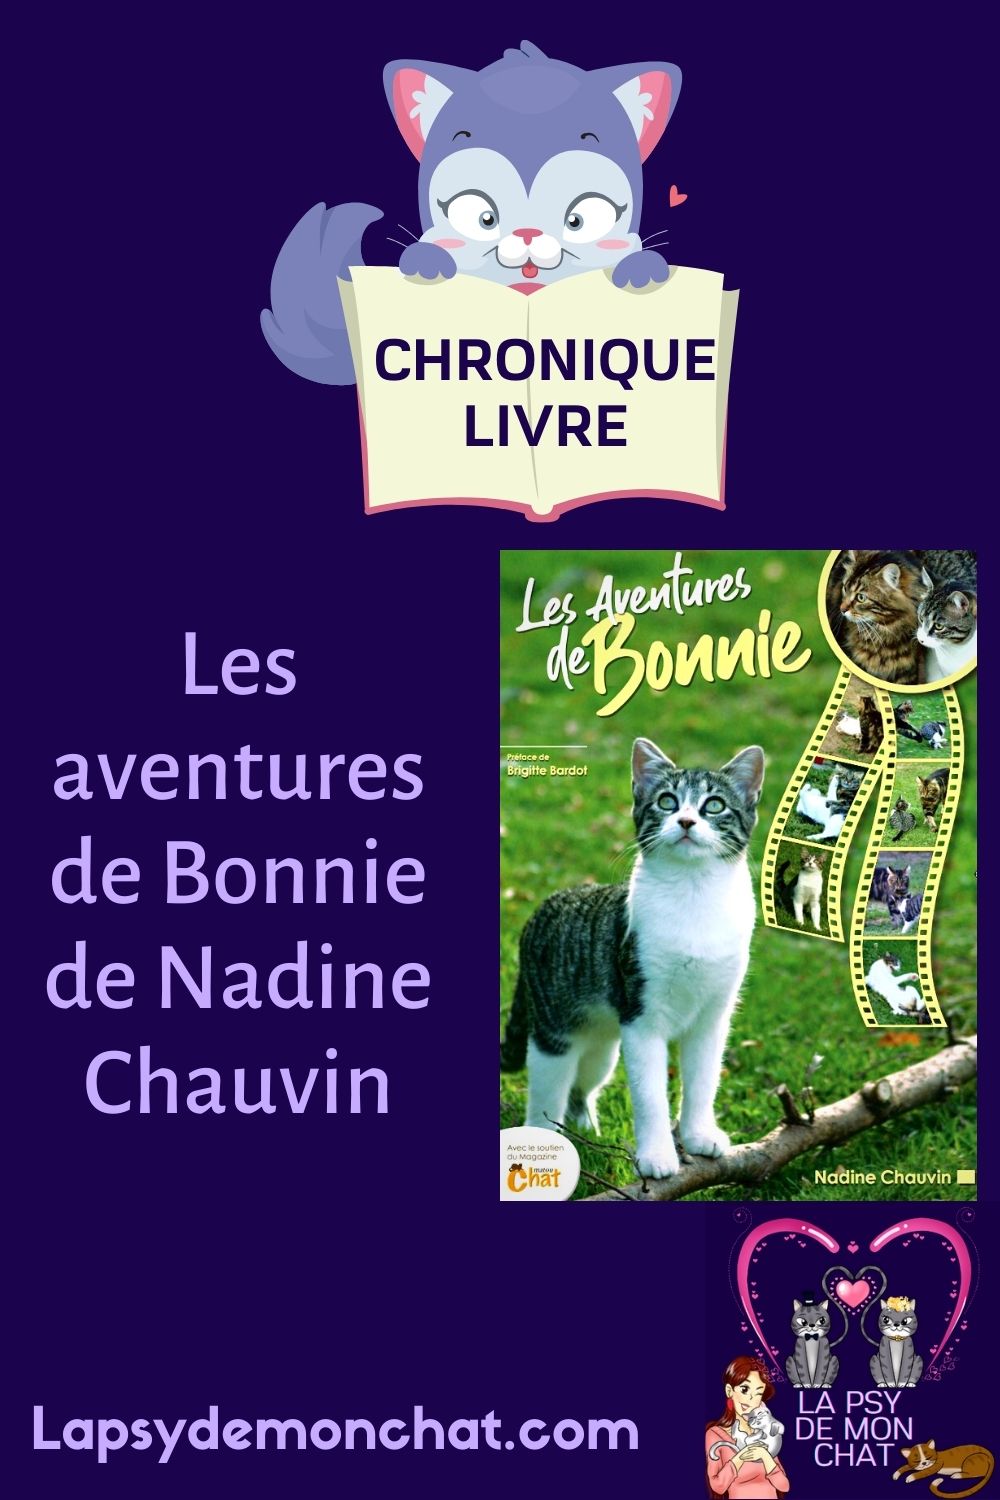 Les aventures de Bonnie de Nadine Chauvin - pinterest